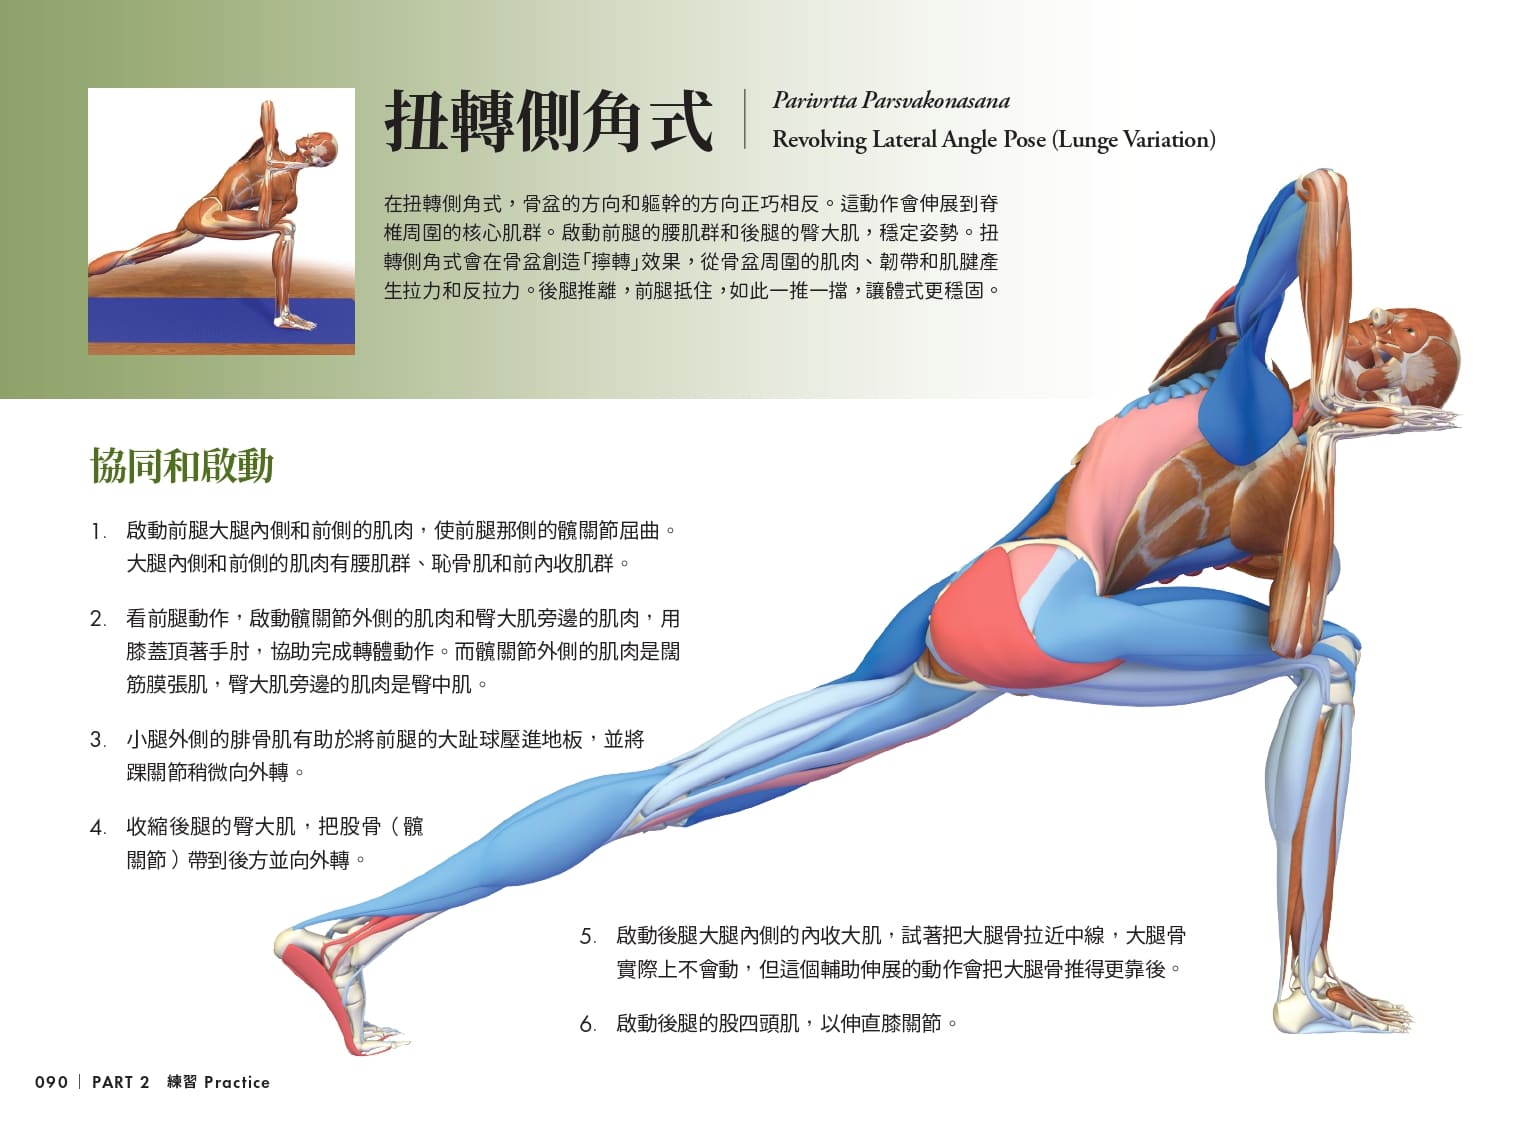 雷隆醫師的瑜伽解剖Ⅱ：關鍵體式